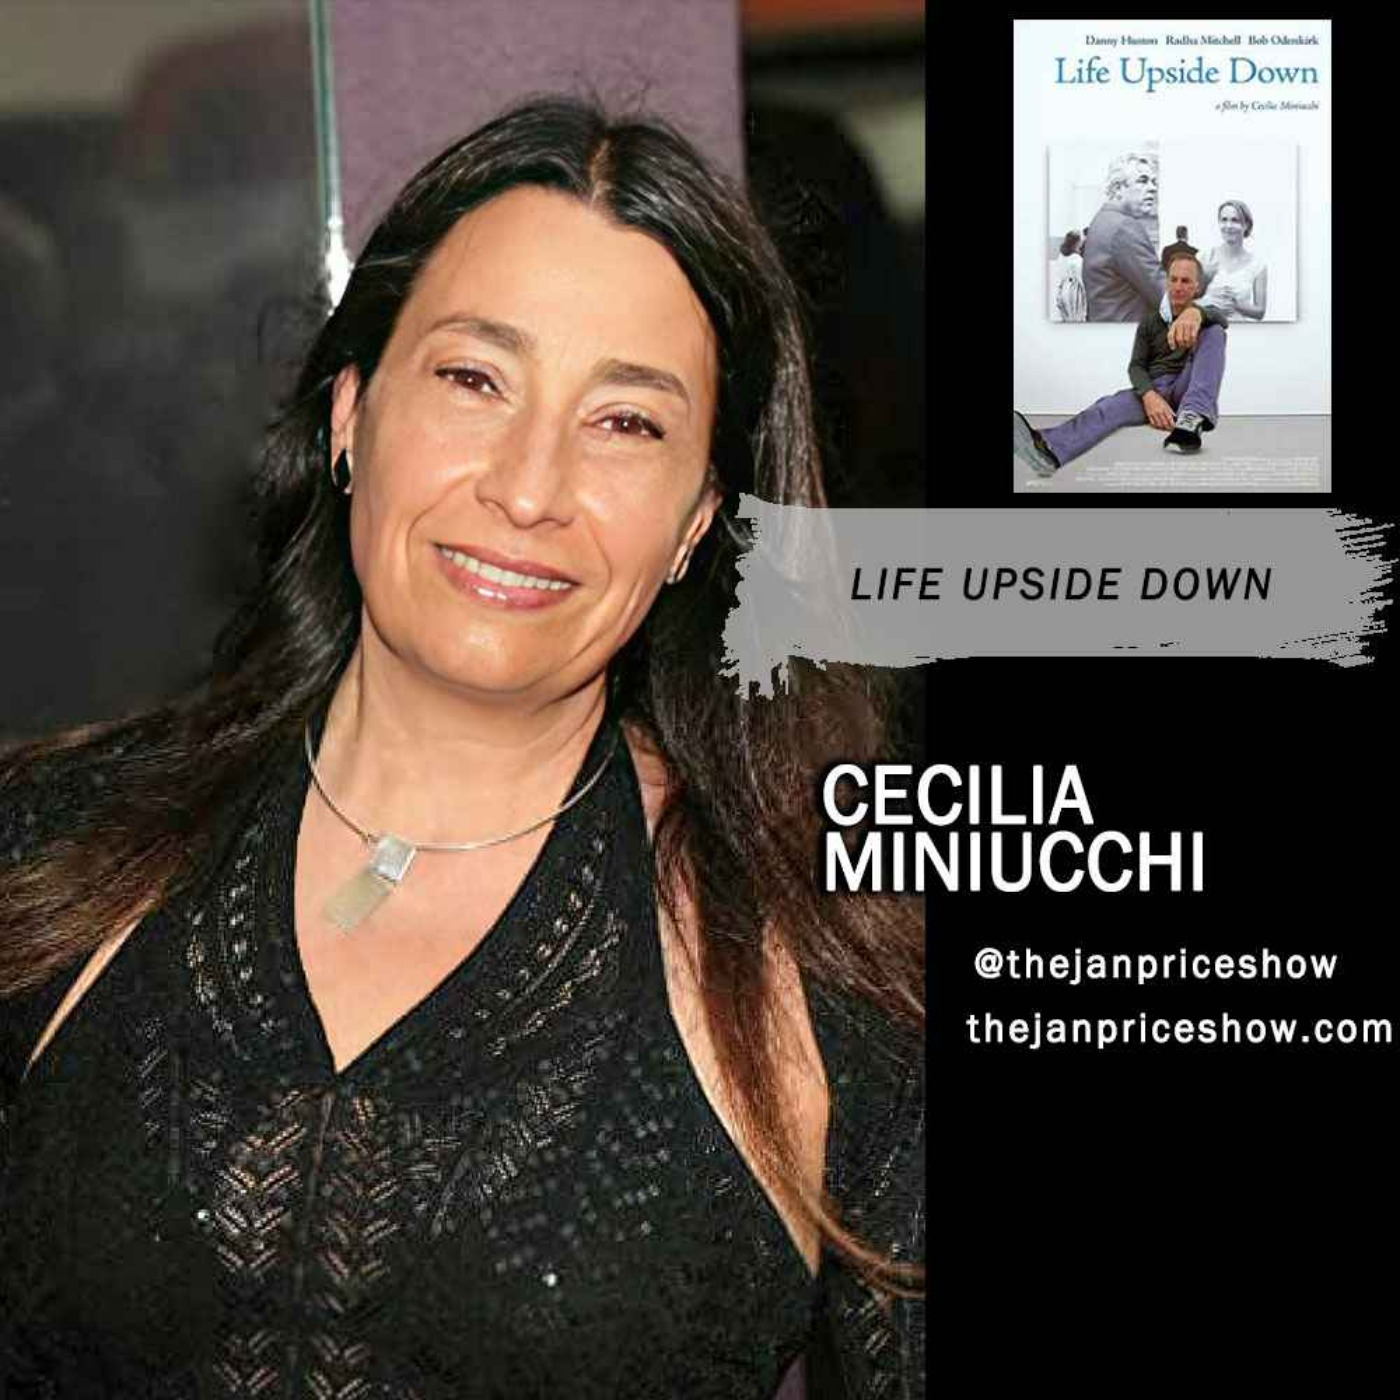 Cecilia Miniucchi - Life Upside Down